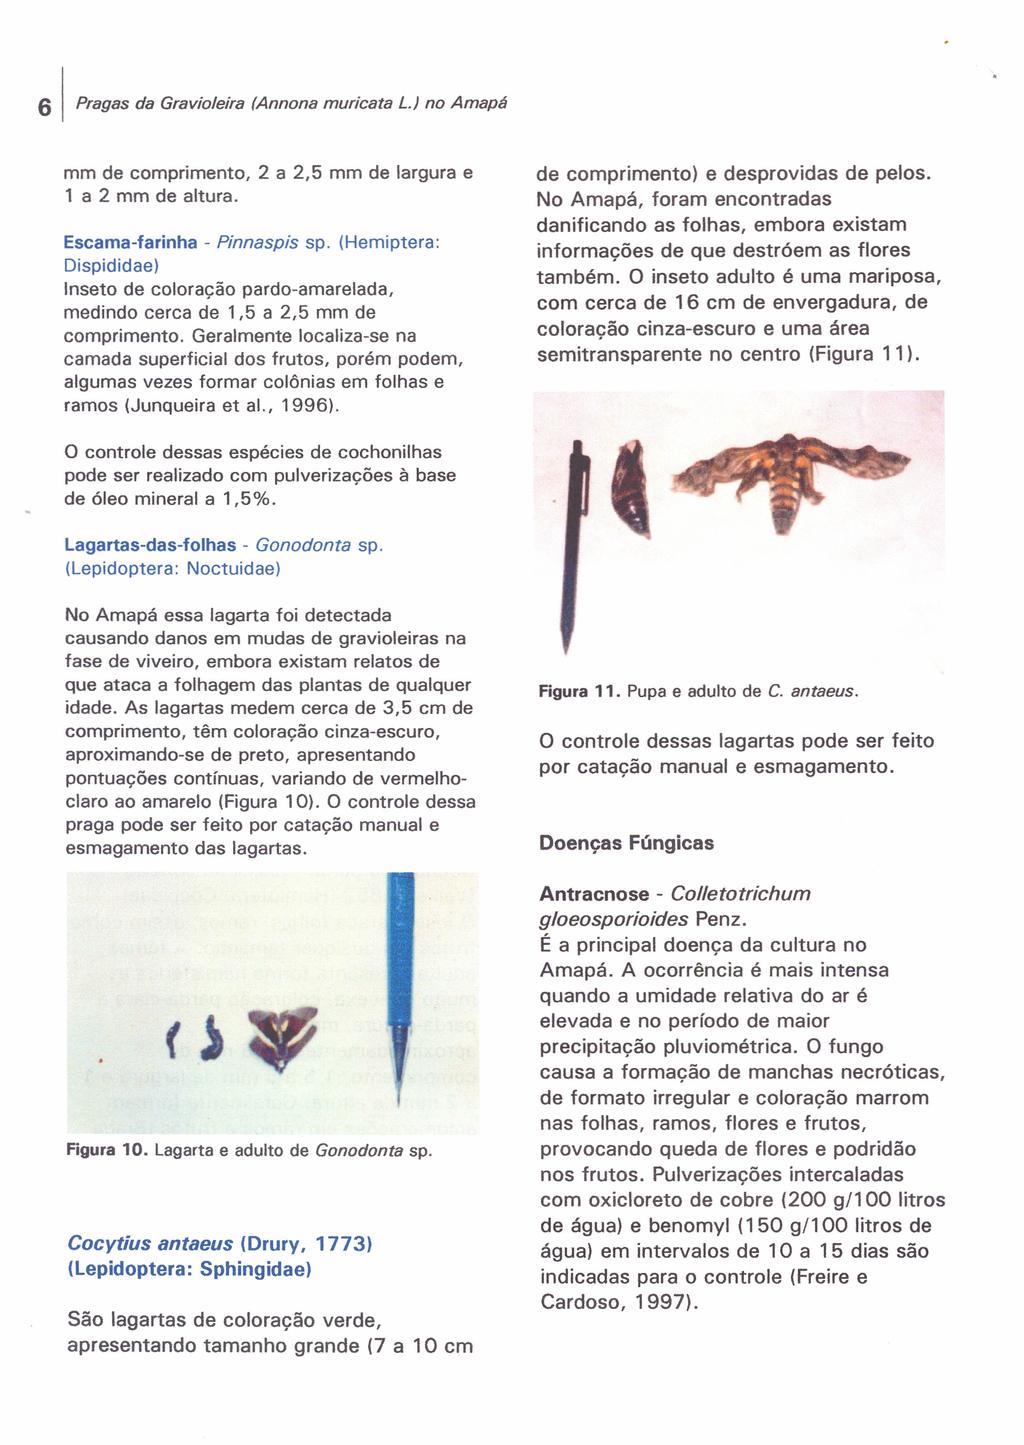 6 Pragas da Gravioleira (Annona muricata L.) no Amapá mm de comprimento, 1 a 2 mm de altura. 2 a 2,5 mm de largura e Escama-farinha - Pinnaspis sp.